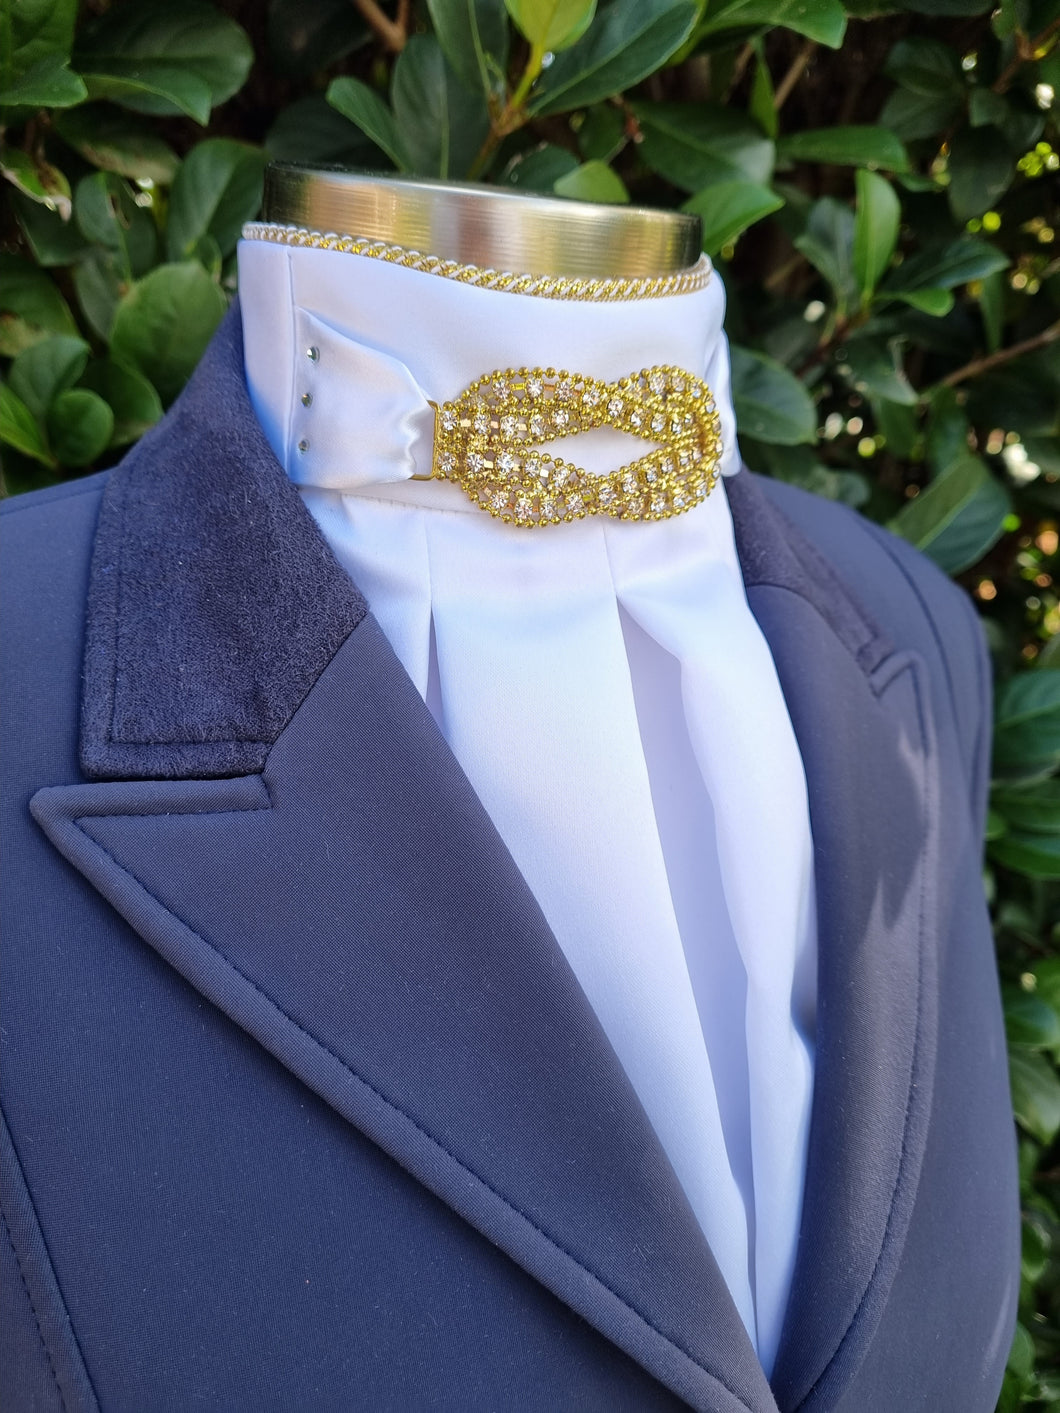 ERA Euro Eliza Stock Tie - White satin with gold crystal embellishment & crystal detail